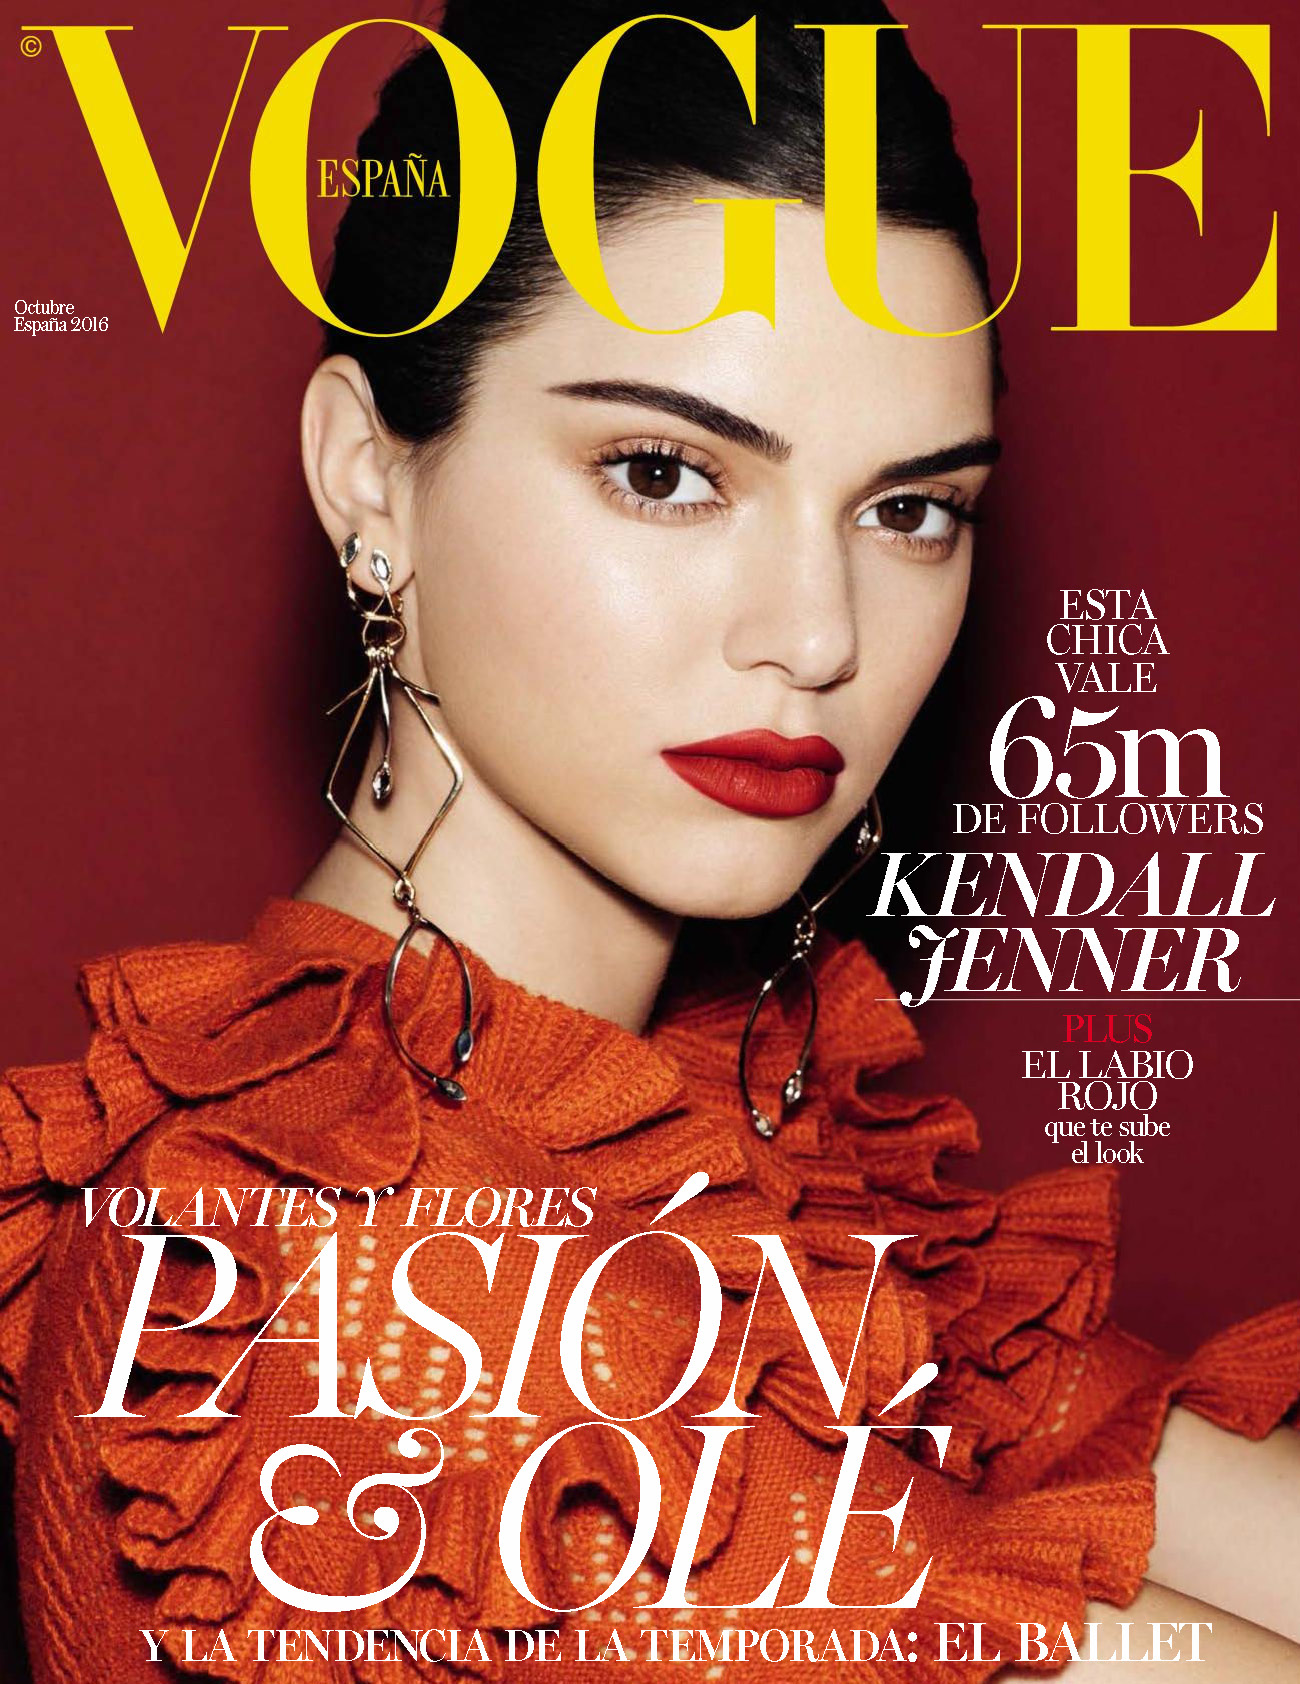 Журнал вог сайт. Кендалл Дженнер для Vogue. Кендалл Дженнер Вог обложка. Кендалл Дженнер на обложке Vogue. Кэндл Джэнер на обложке Вог.